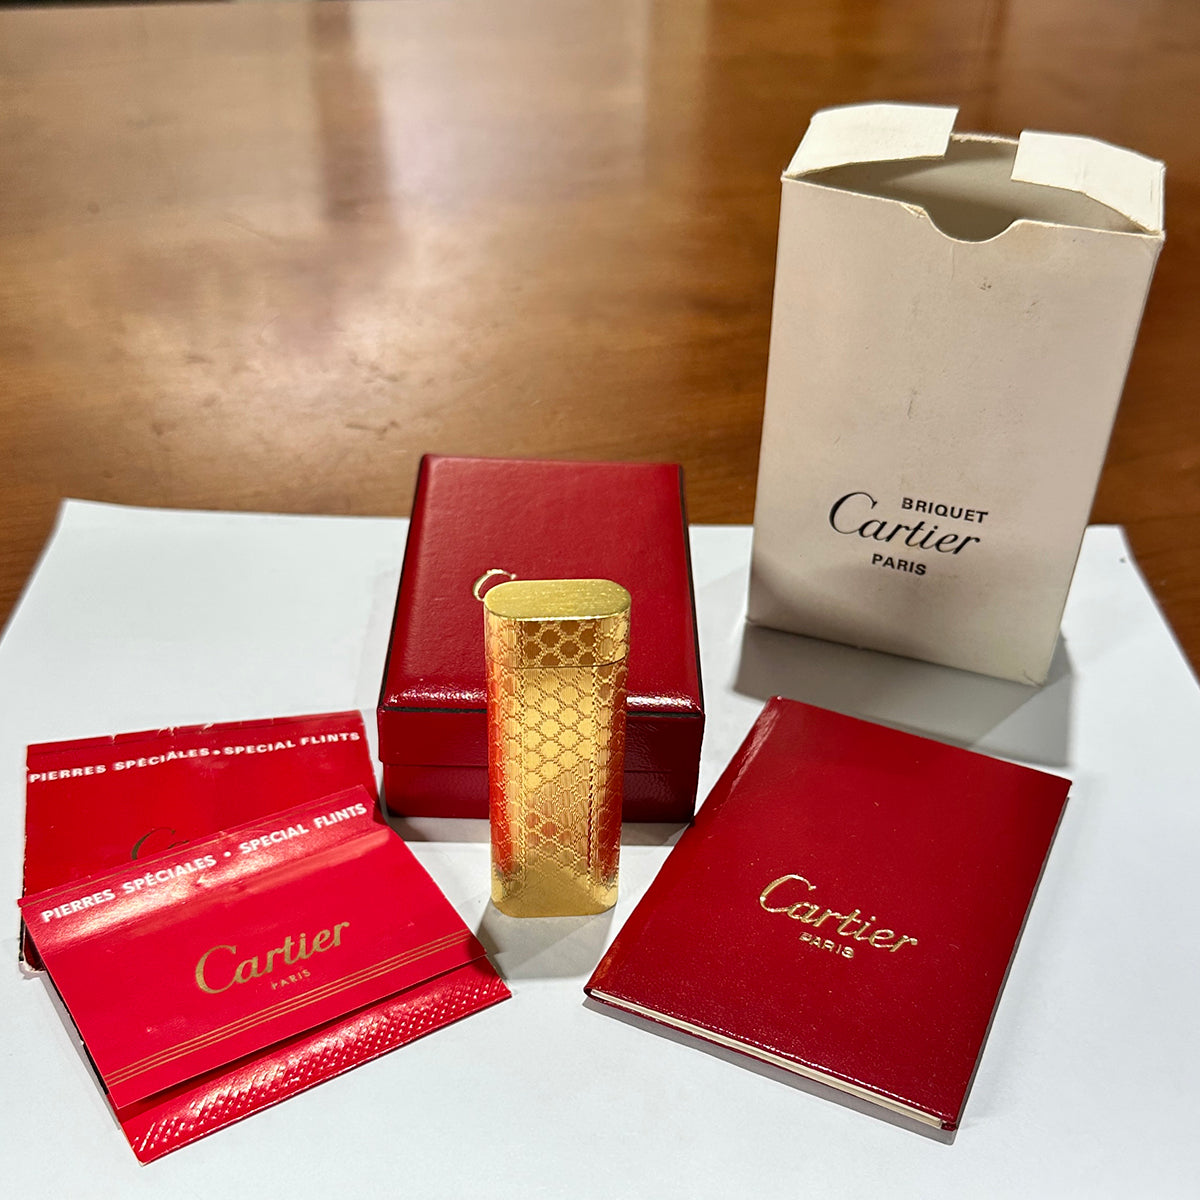 Cartier Paris Lighter